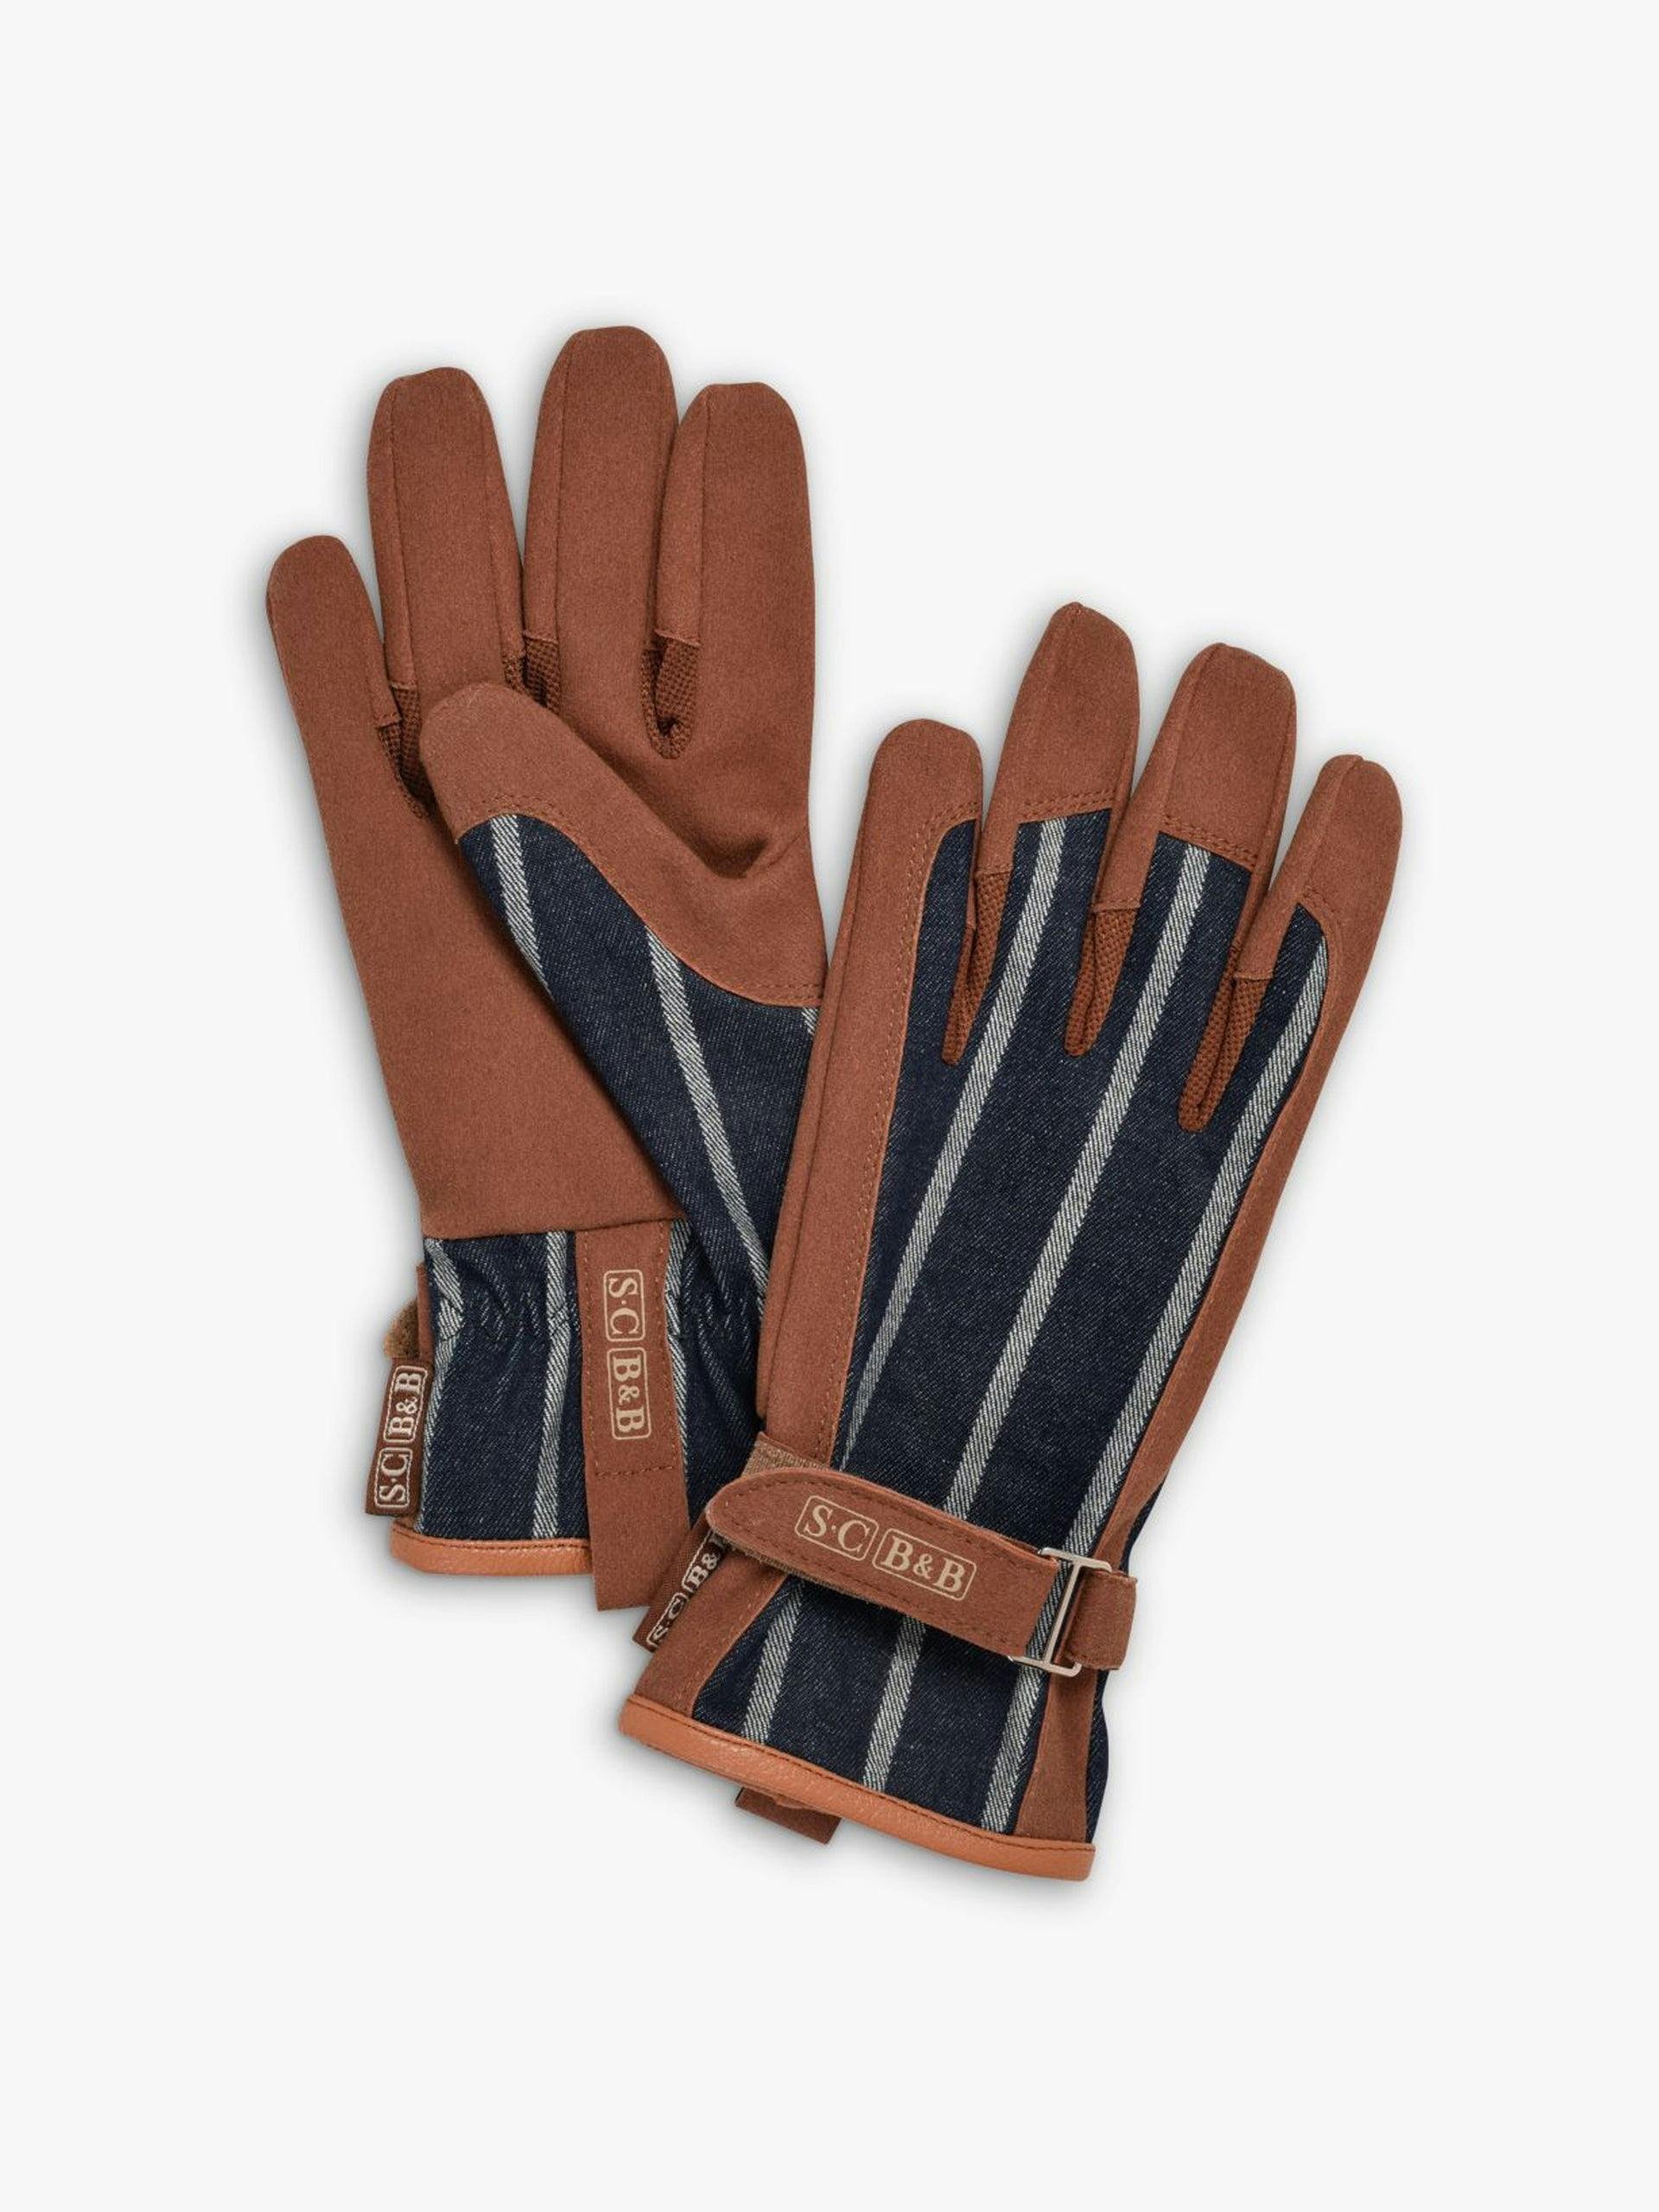 Leather trim striped gardening gloves